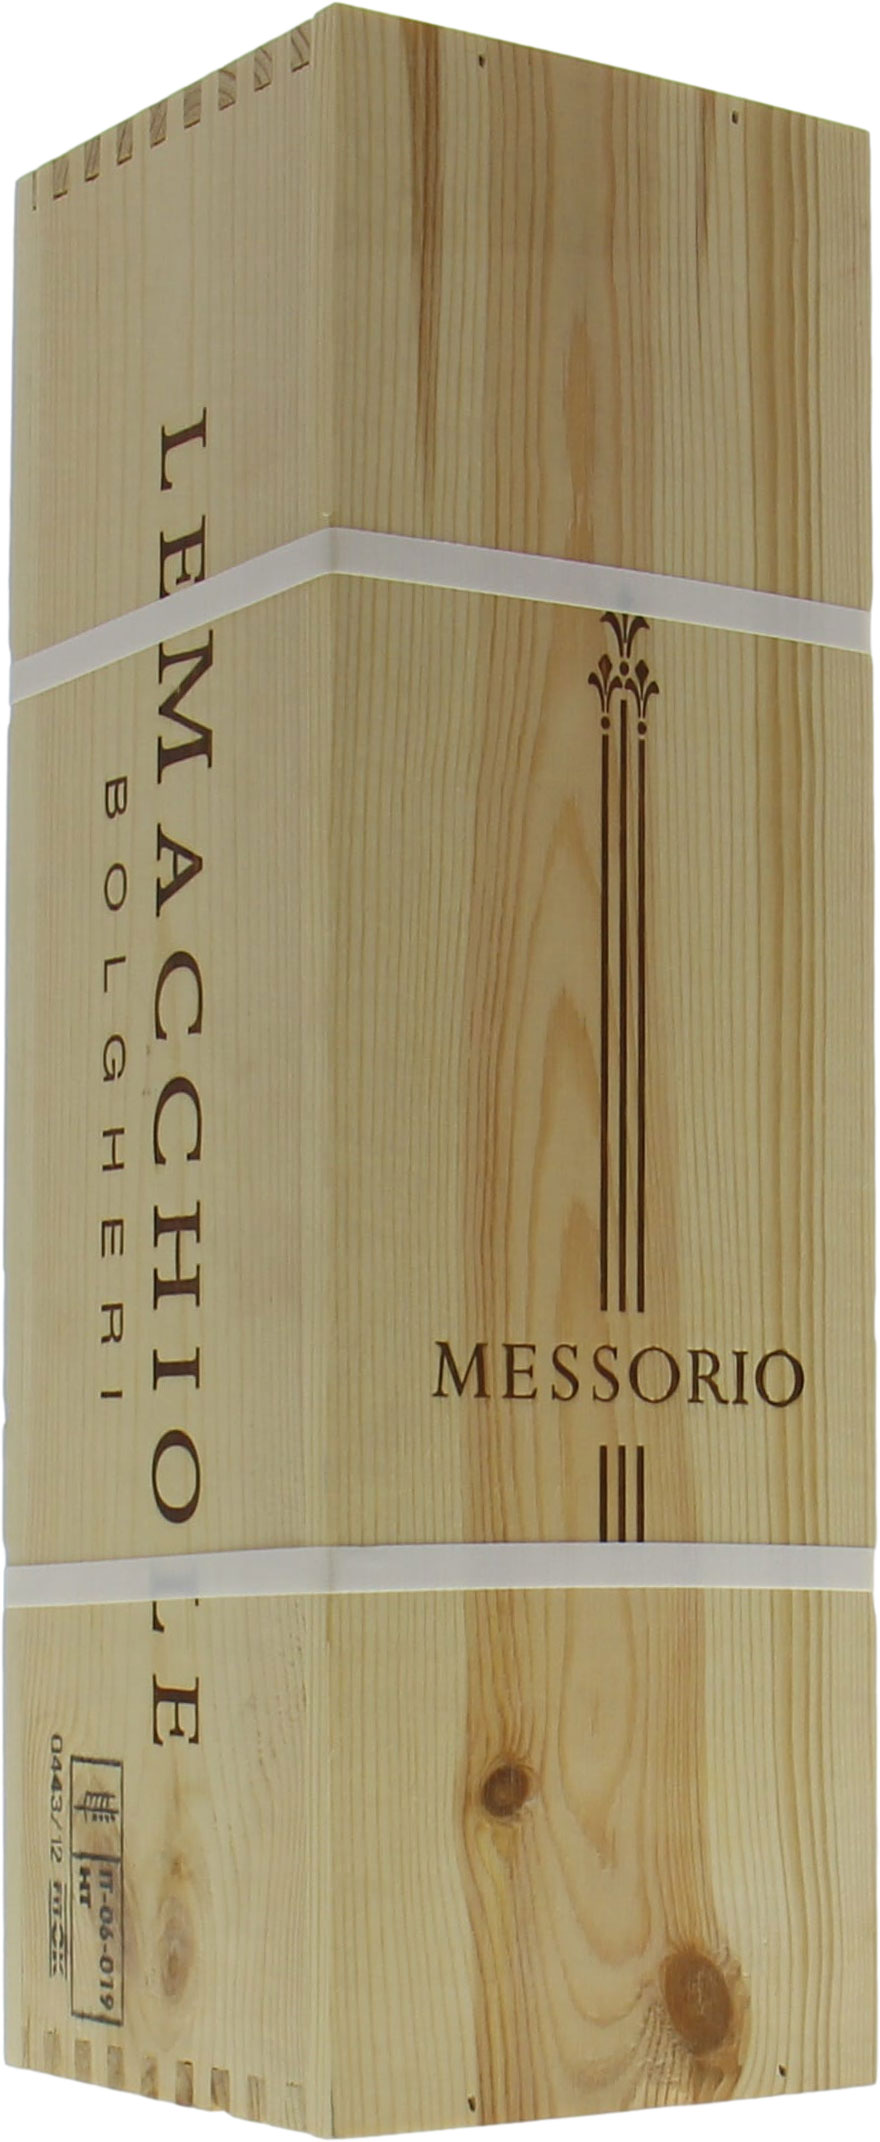 Le Macchiole - Messorio 2009 From Original Wooden Case